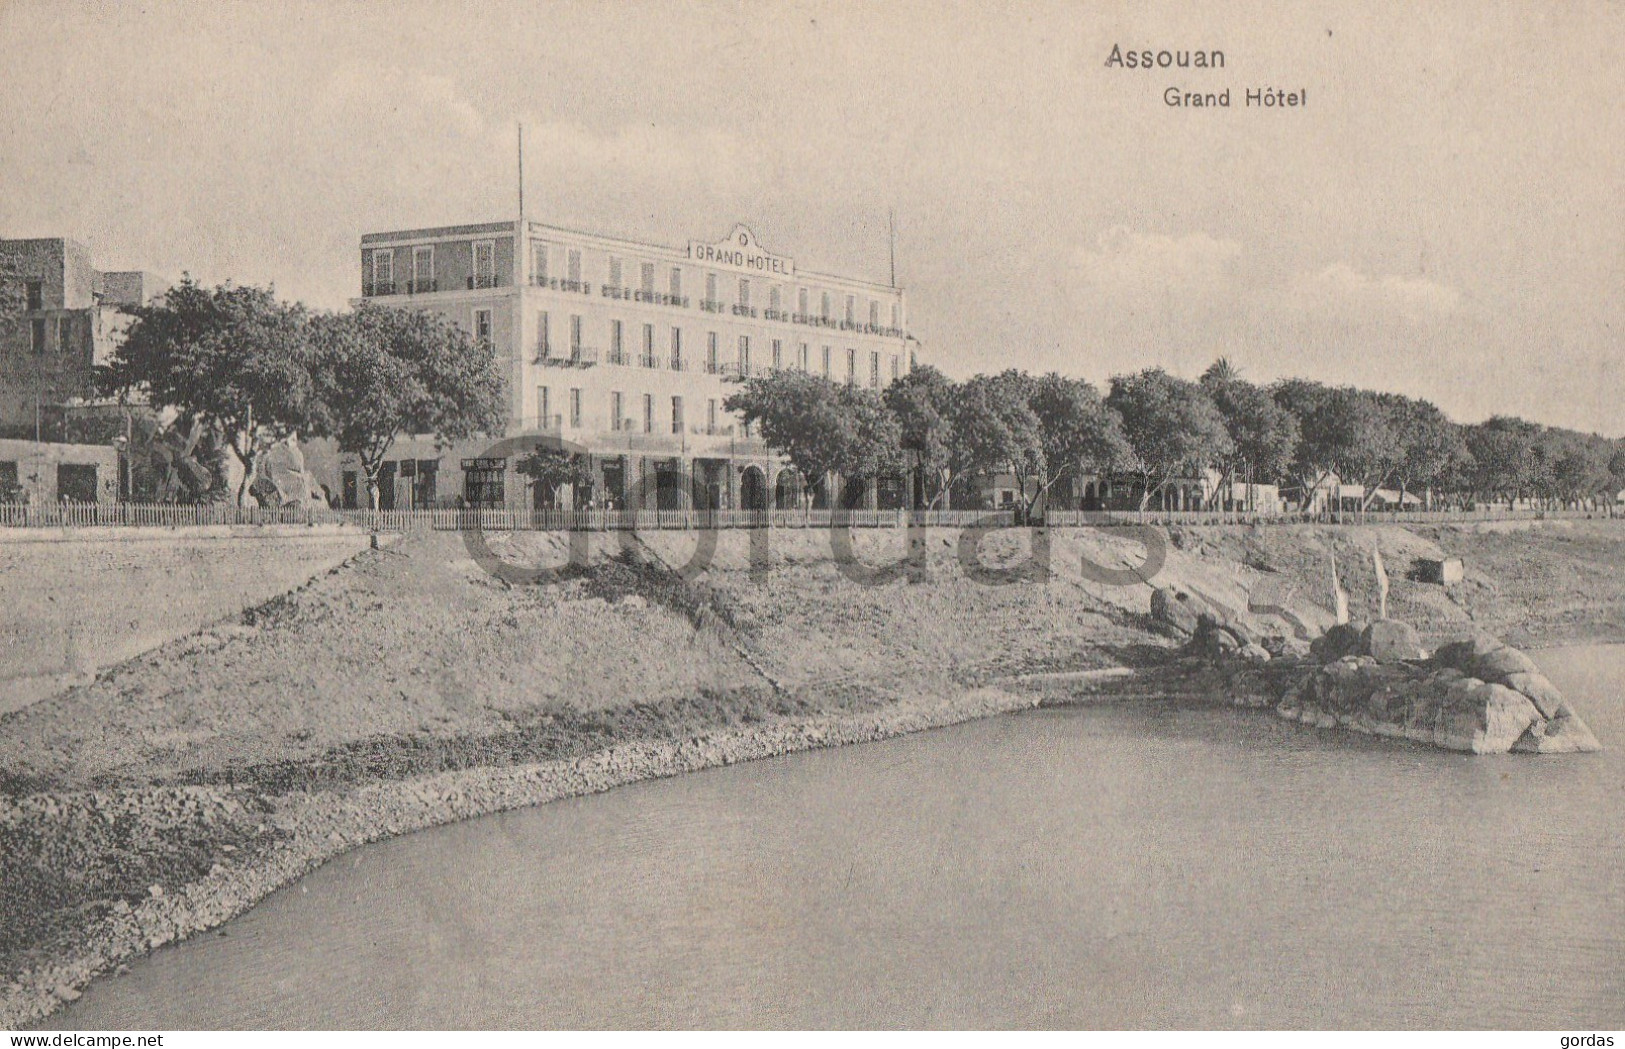 Egypt - Assouan - Aswan - Grand Hotel - Assuan